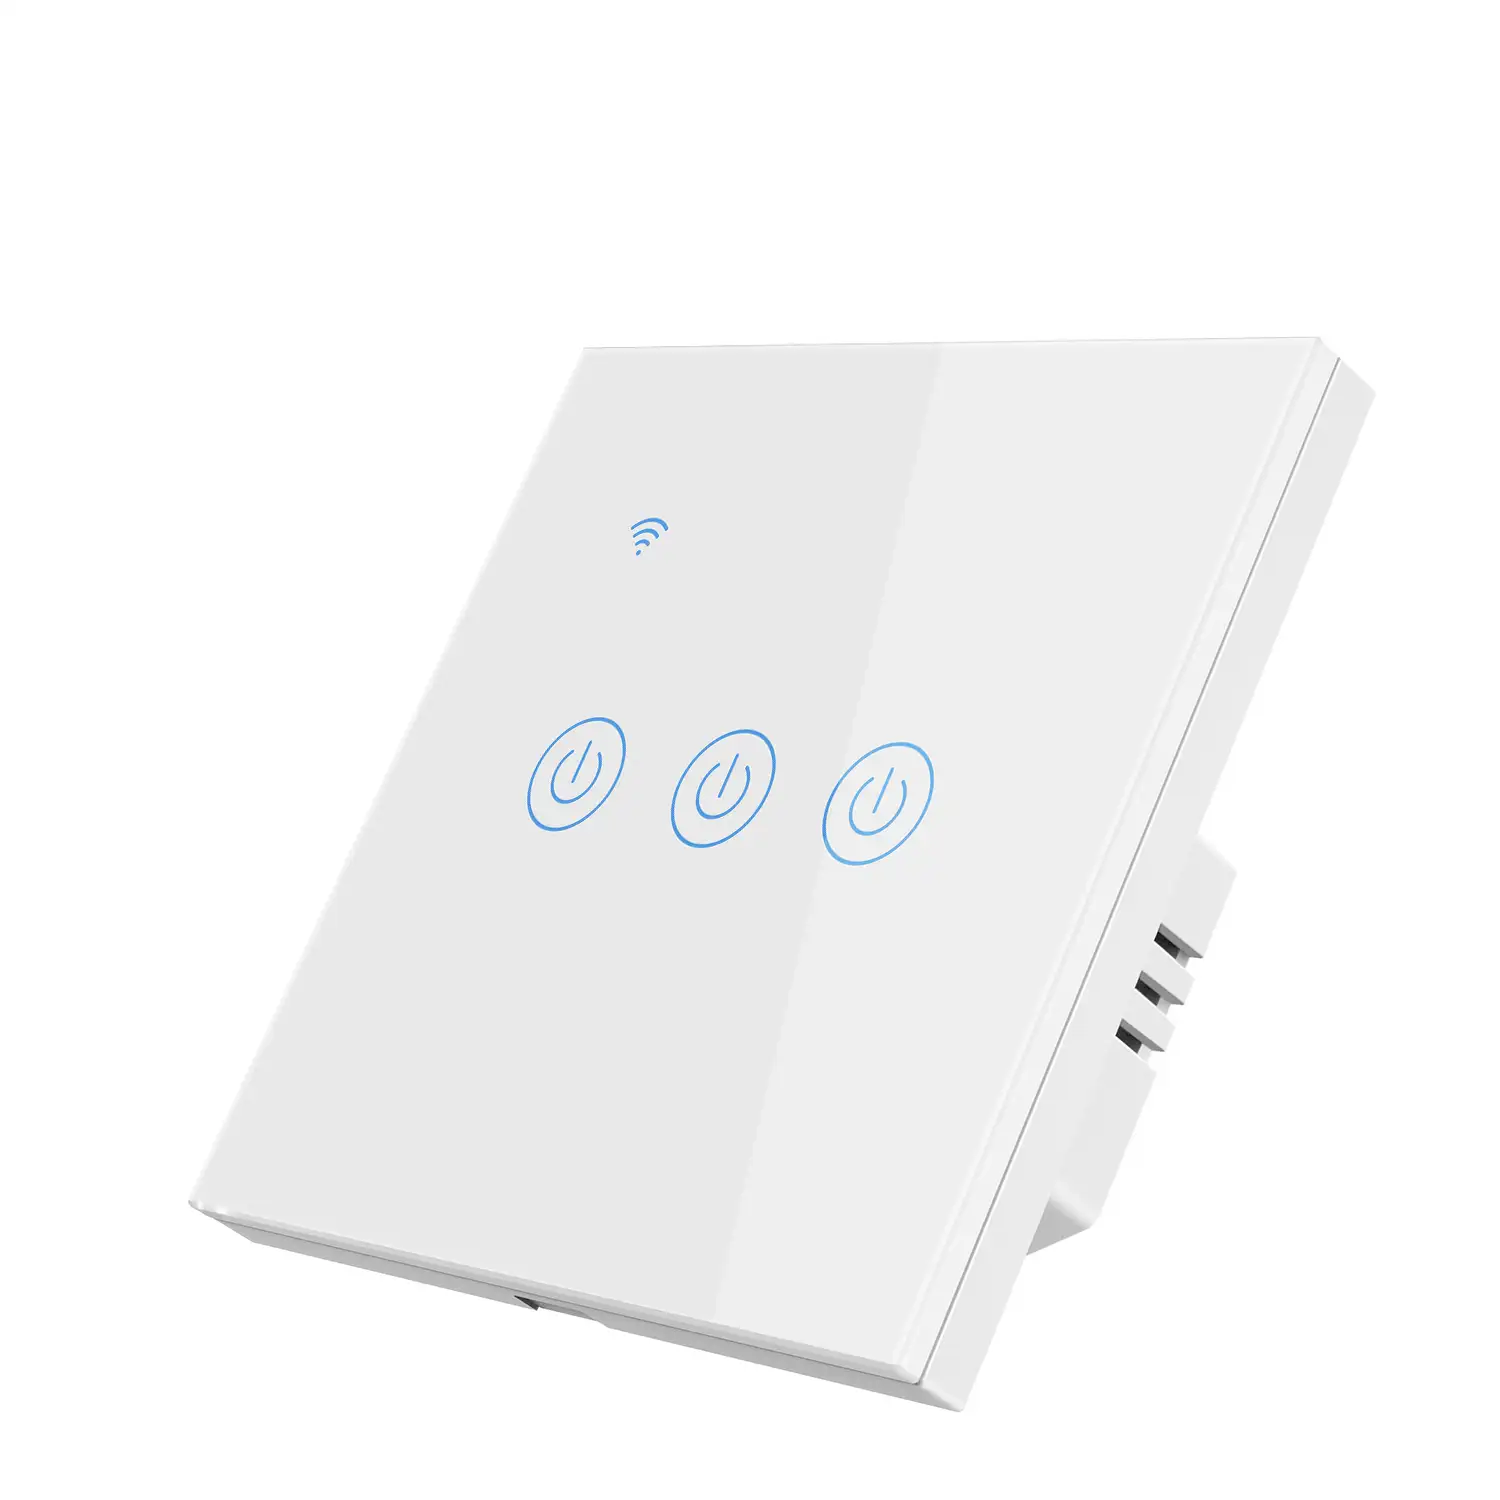 Interruptor Wifi Smarthome con 3 pulsadores compatible con